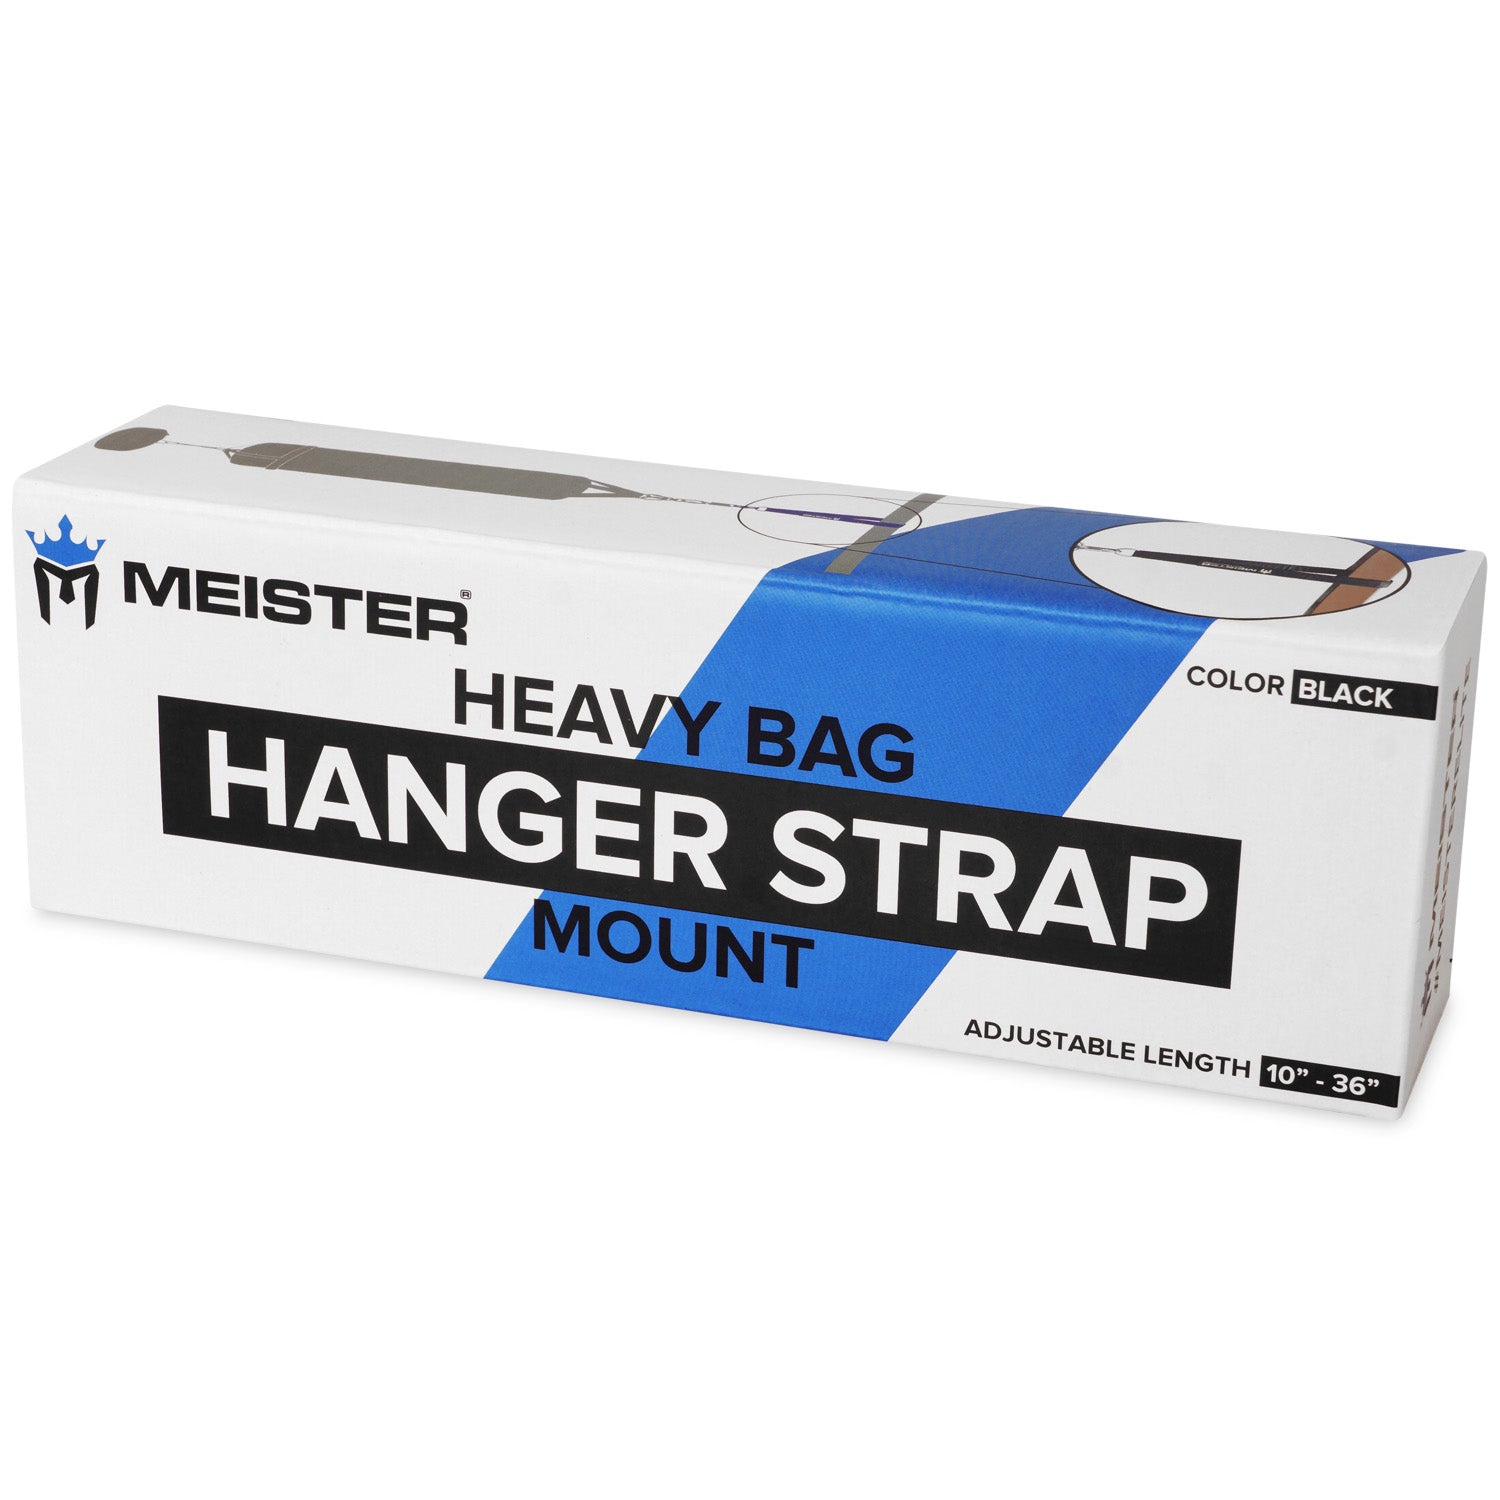 Meister Heavy Bag Hanger Strap Mount - Black